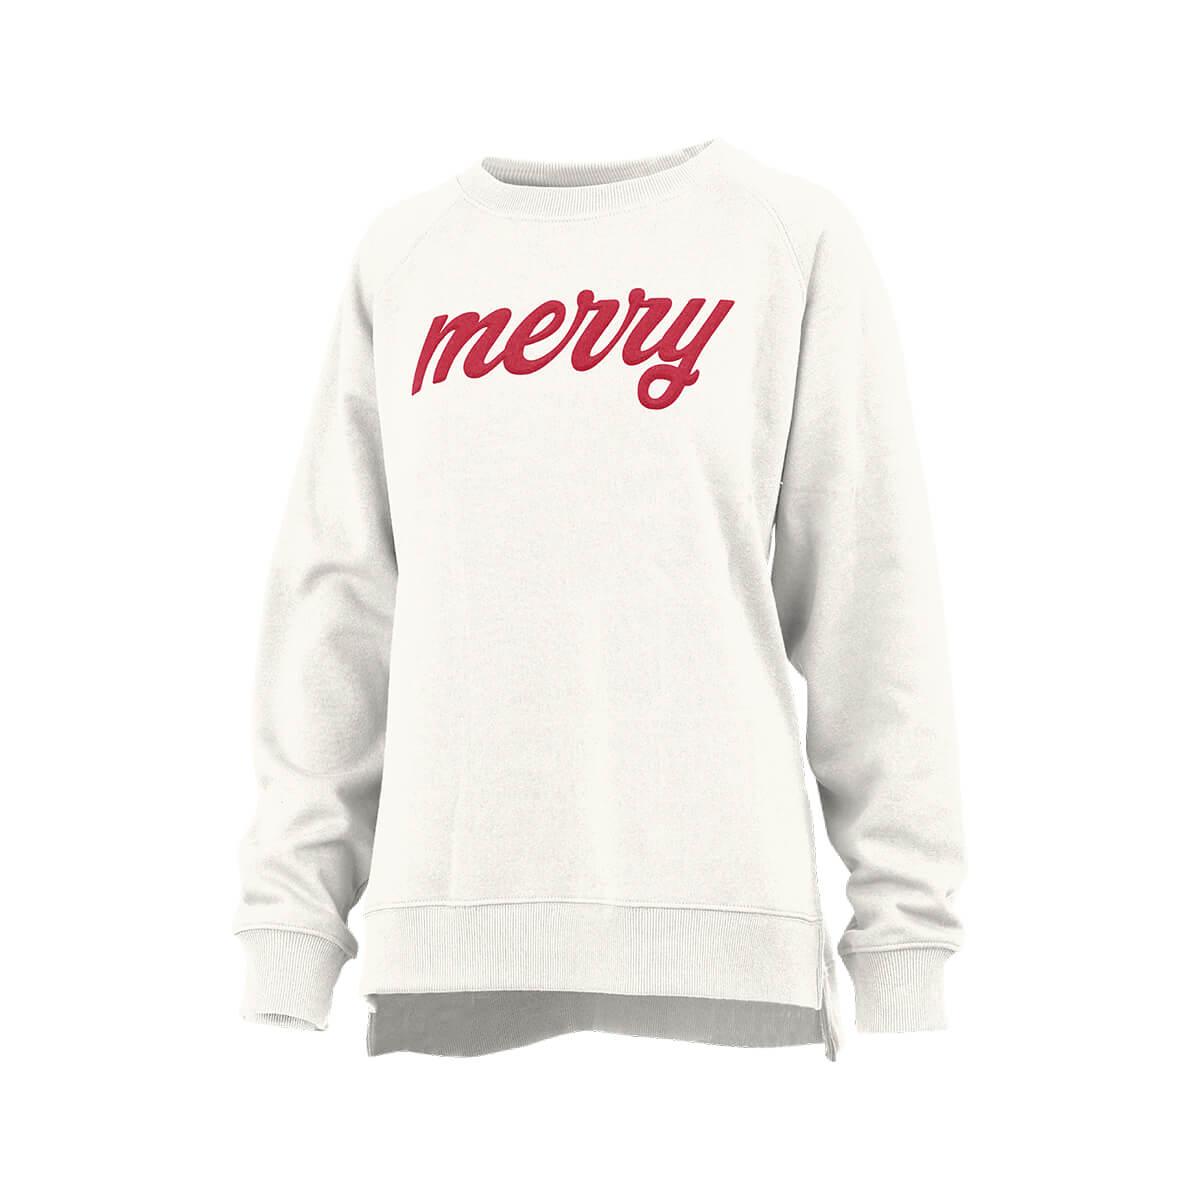  Merry Cozy Fleece Long Sleeve Sweatshirt